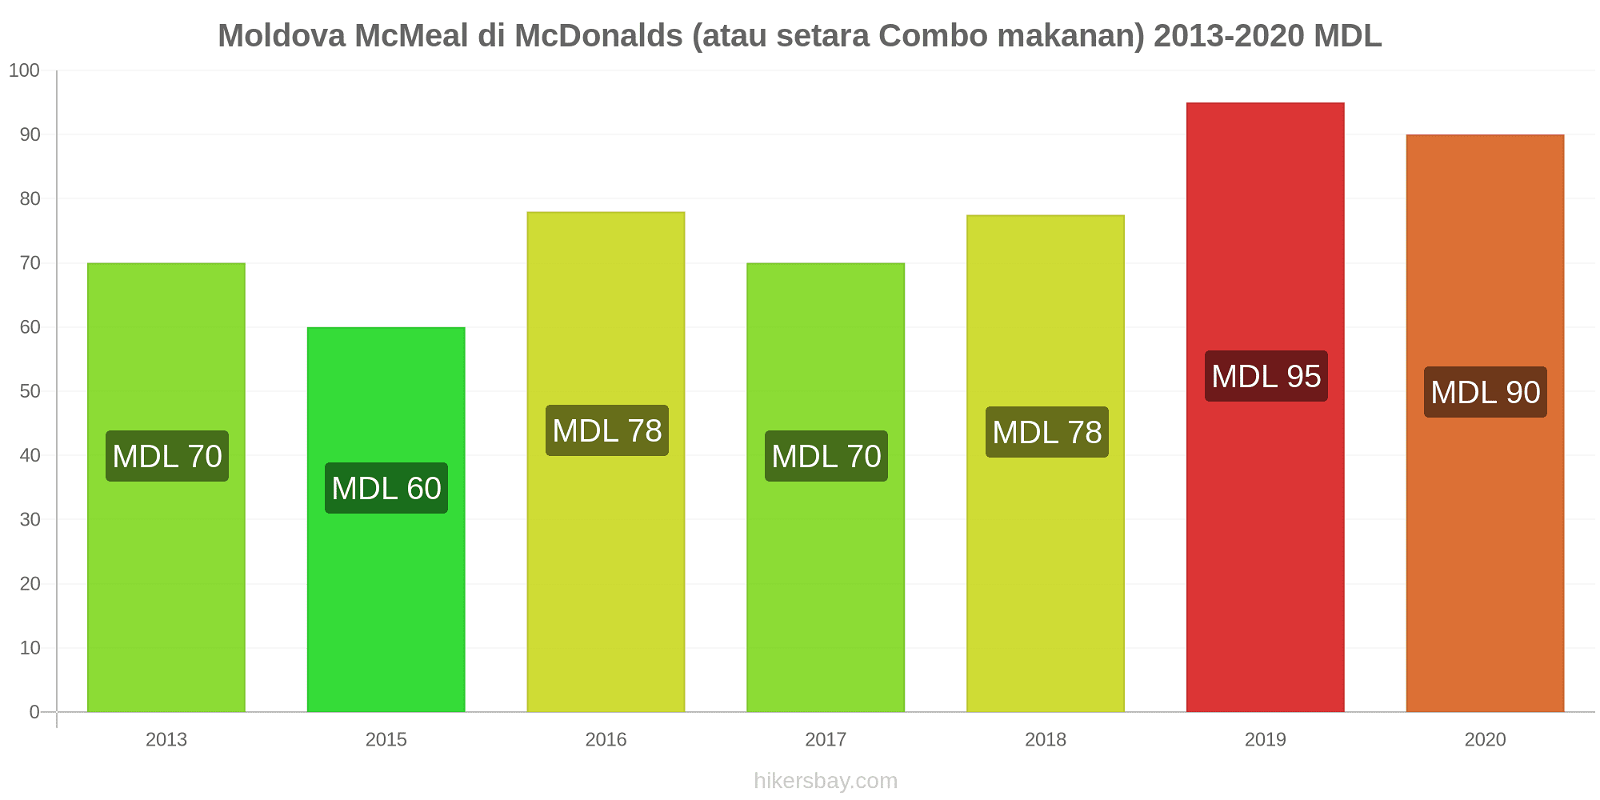 Moldova perubahan harga McMeal di McDonalds (atau setara Combo makanan) hikersbay.com